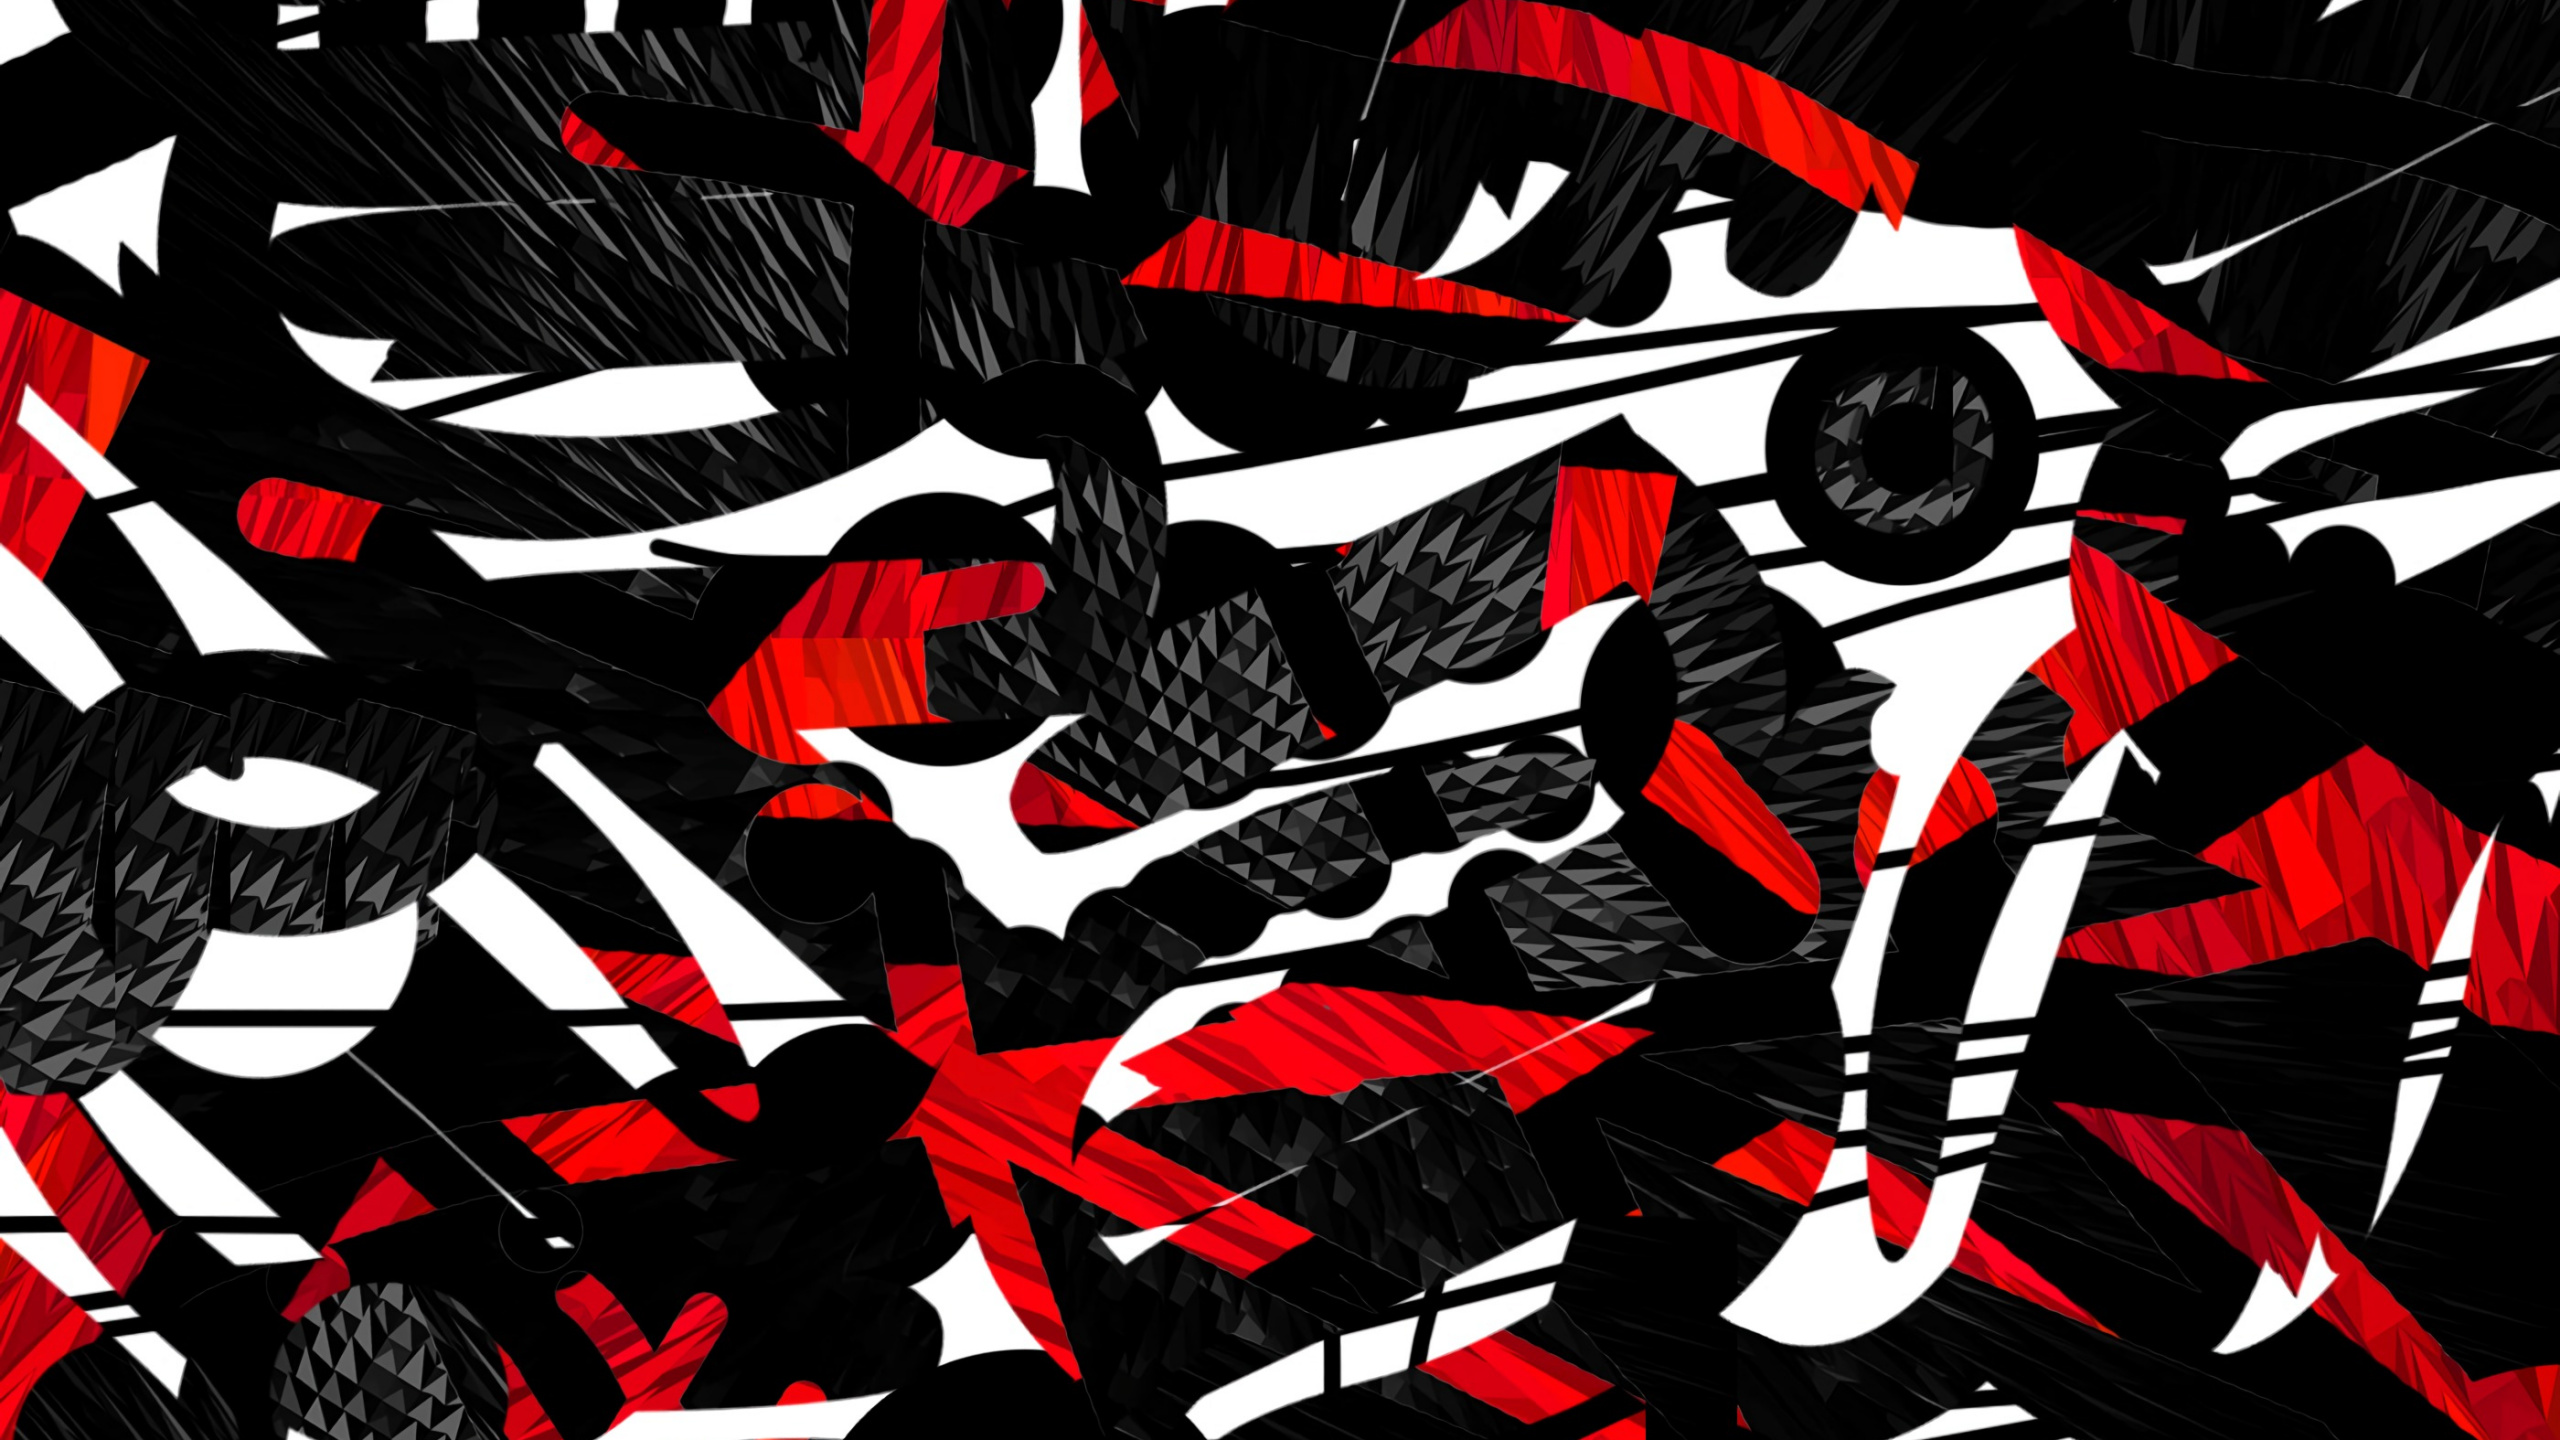 Pintura Abstracta en Blanco y Negro y Rojo. Wallpaper in 2560x1440 Resolution